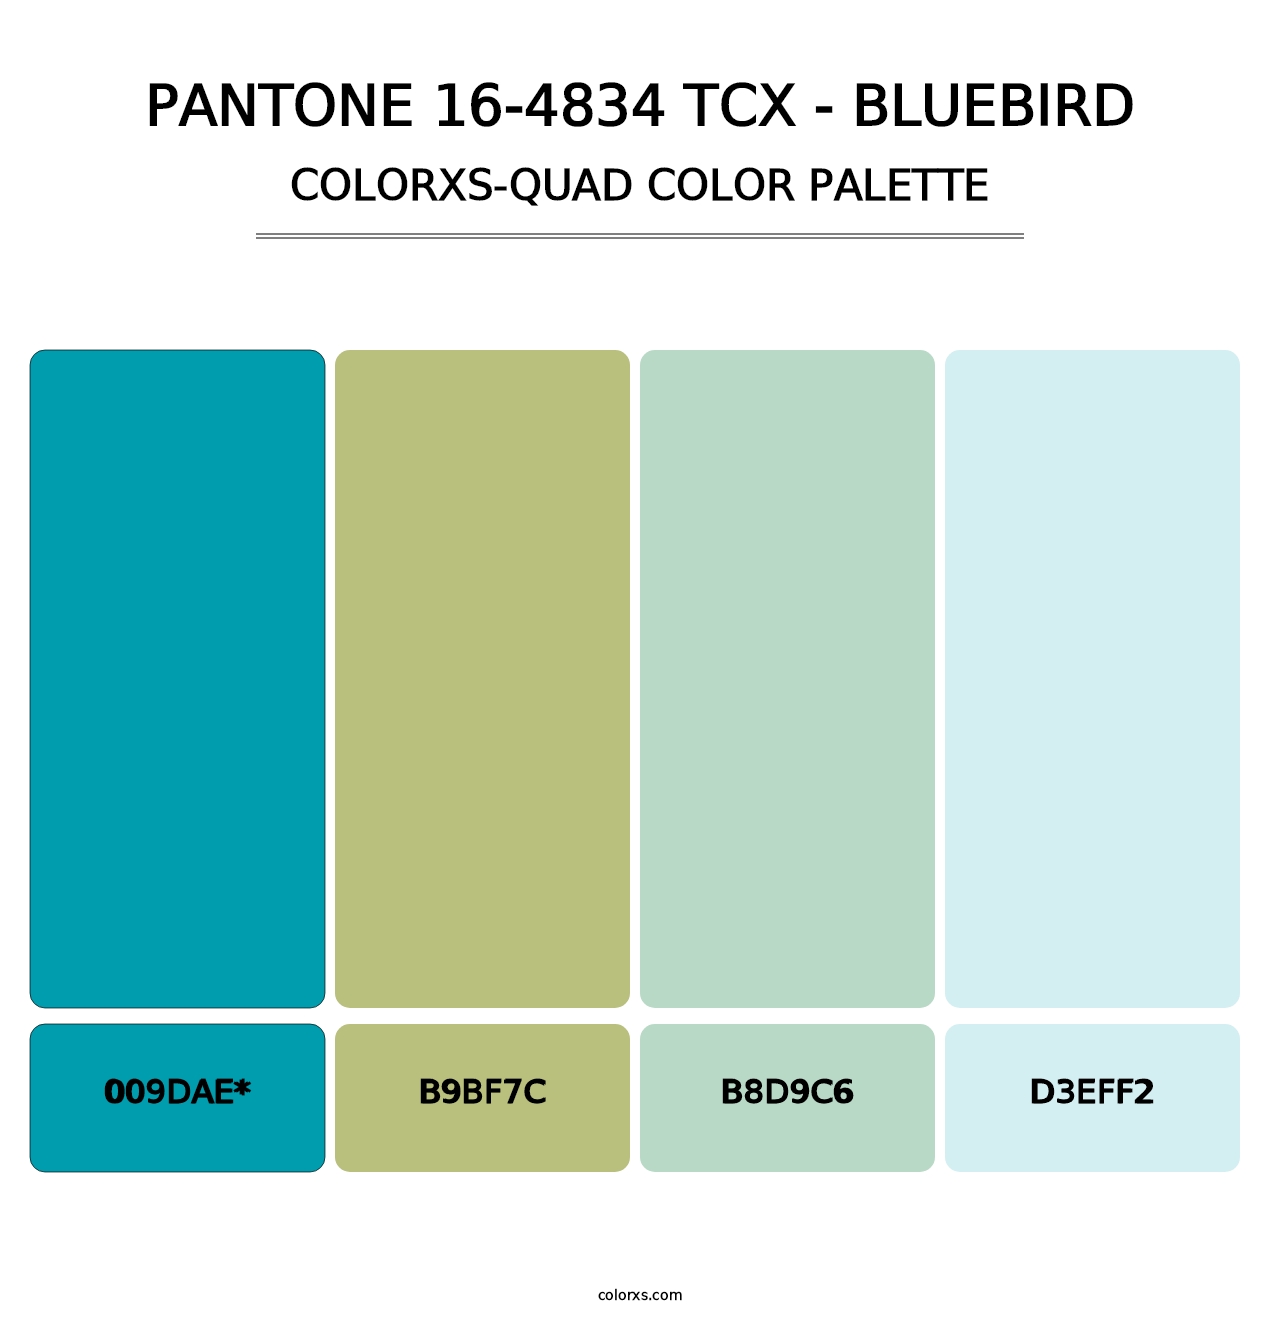 PANTONE 16-4834 TCX - Bluebird - Colorxs Quad Palette